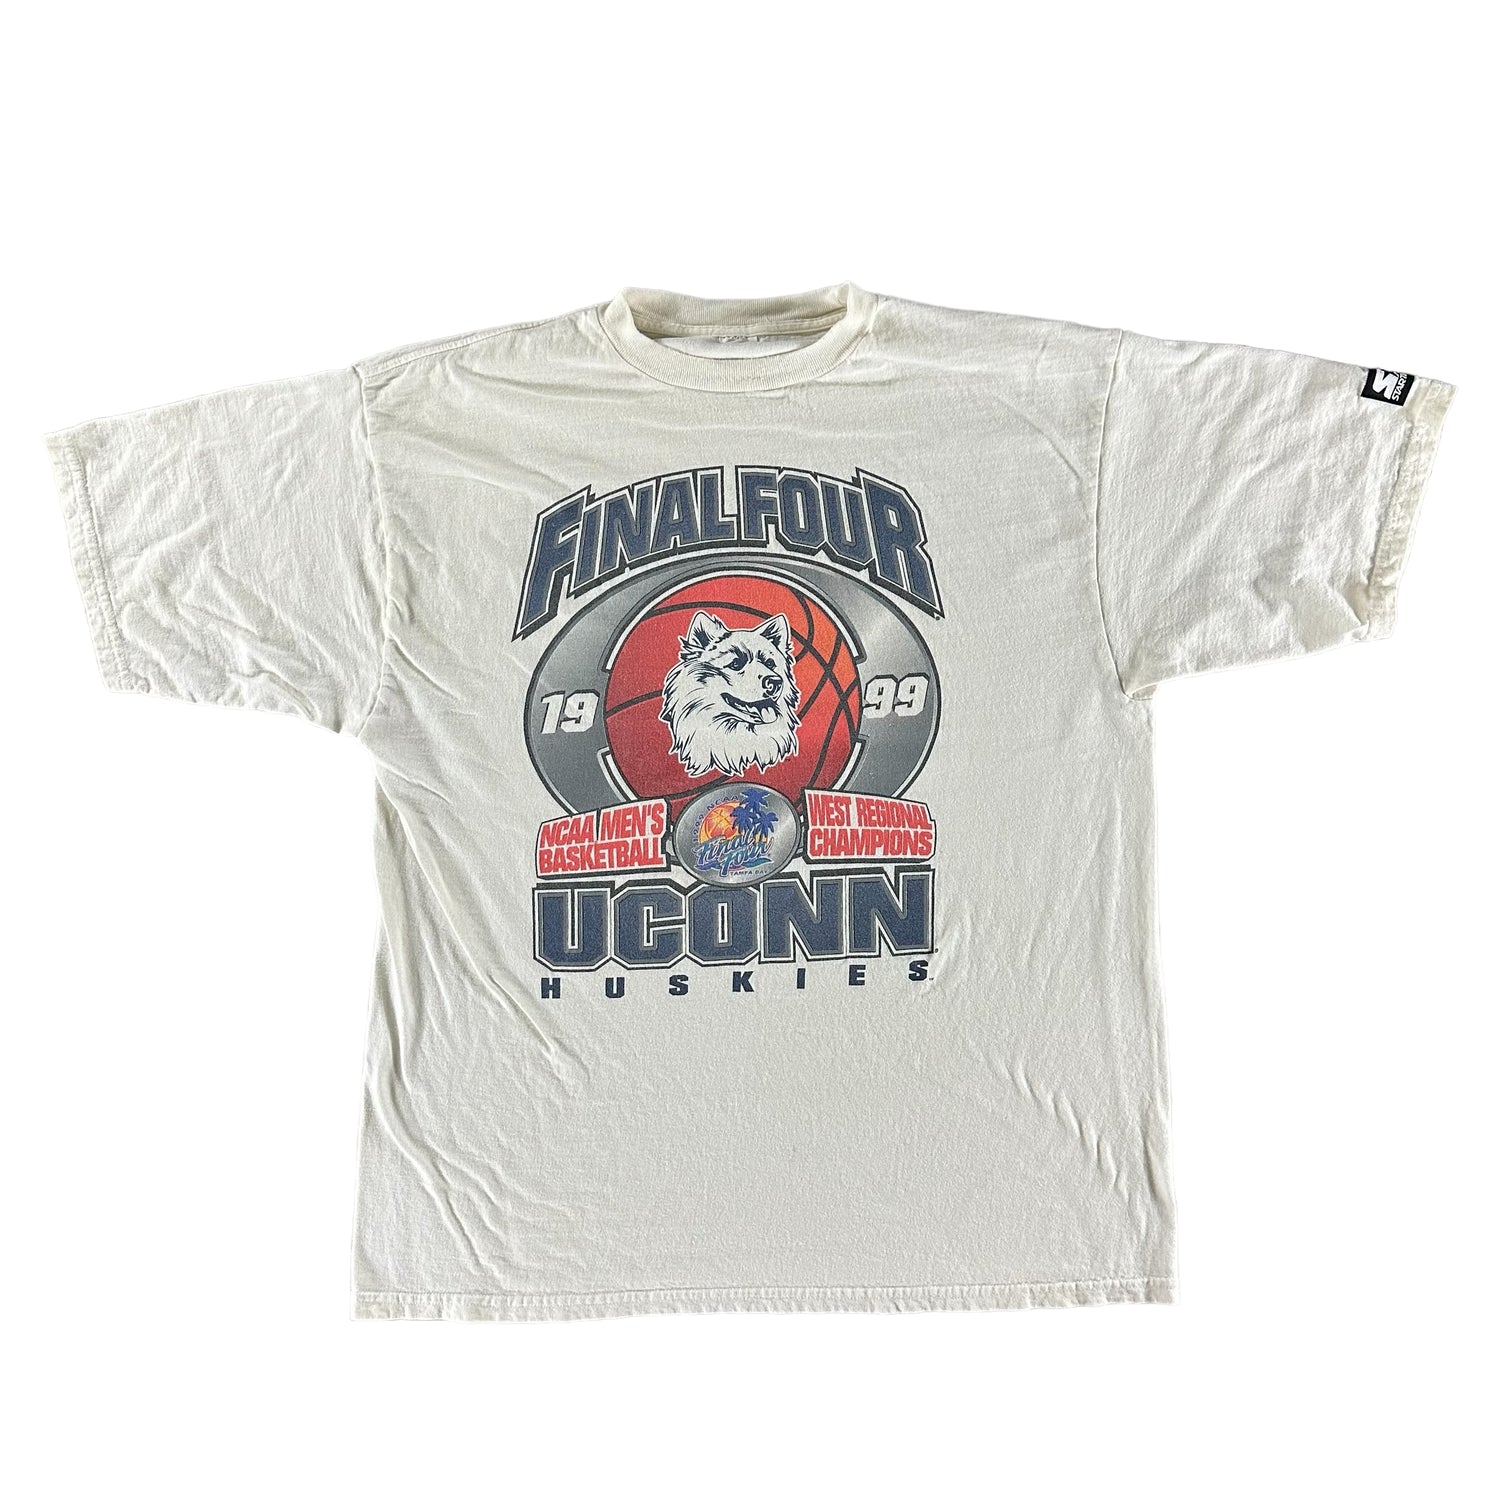 Vintage 1990s University of Connecticut T-shirt size XL